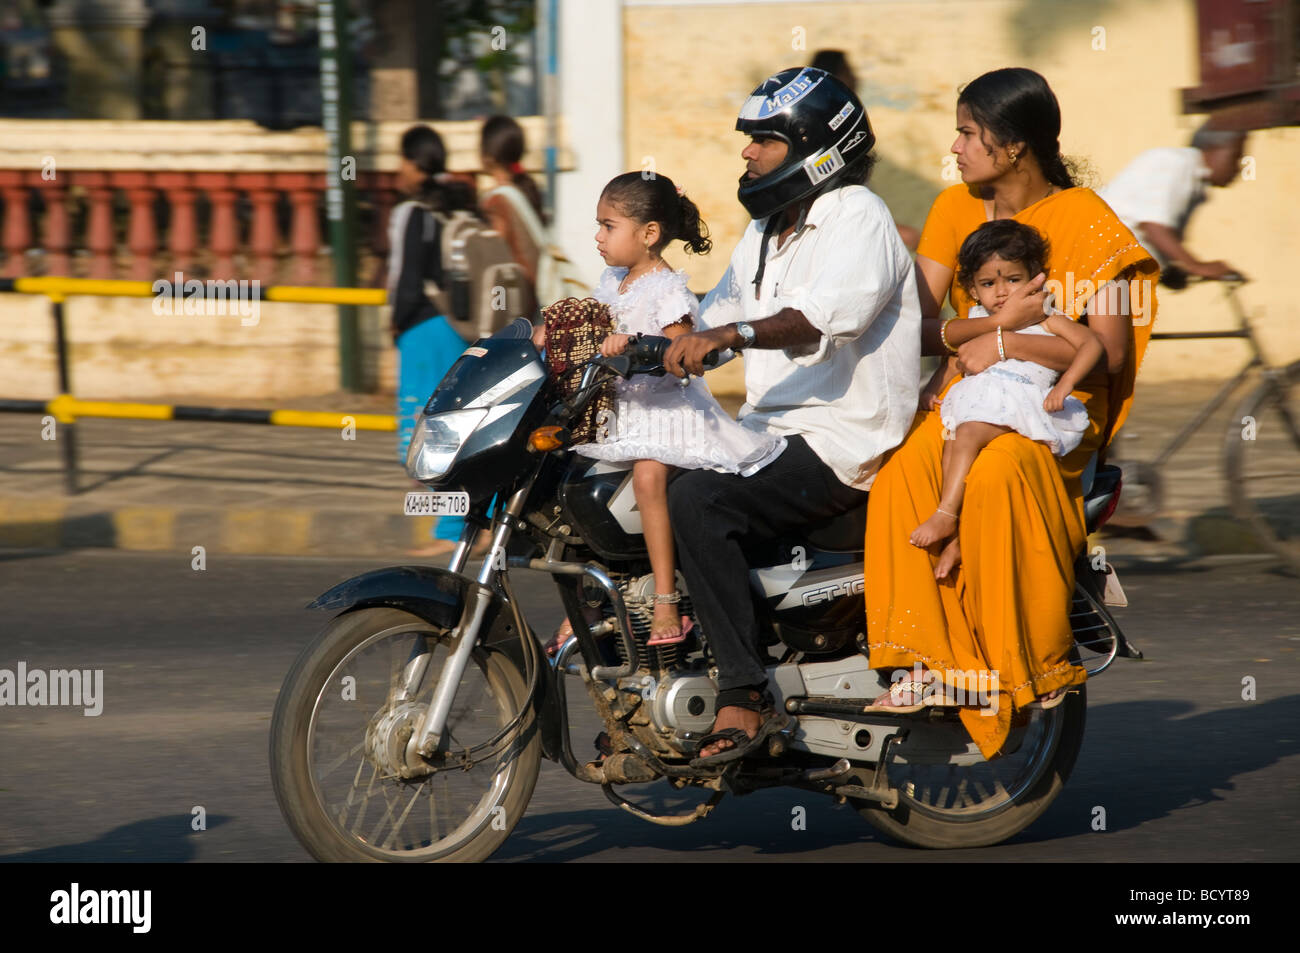 Une famille indienne sur une moto en Inde Ratan Tata a dit avoir vu ensemble familles sur un vélo a été son inspiration pour le Nano Banque D'Images